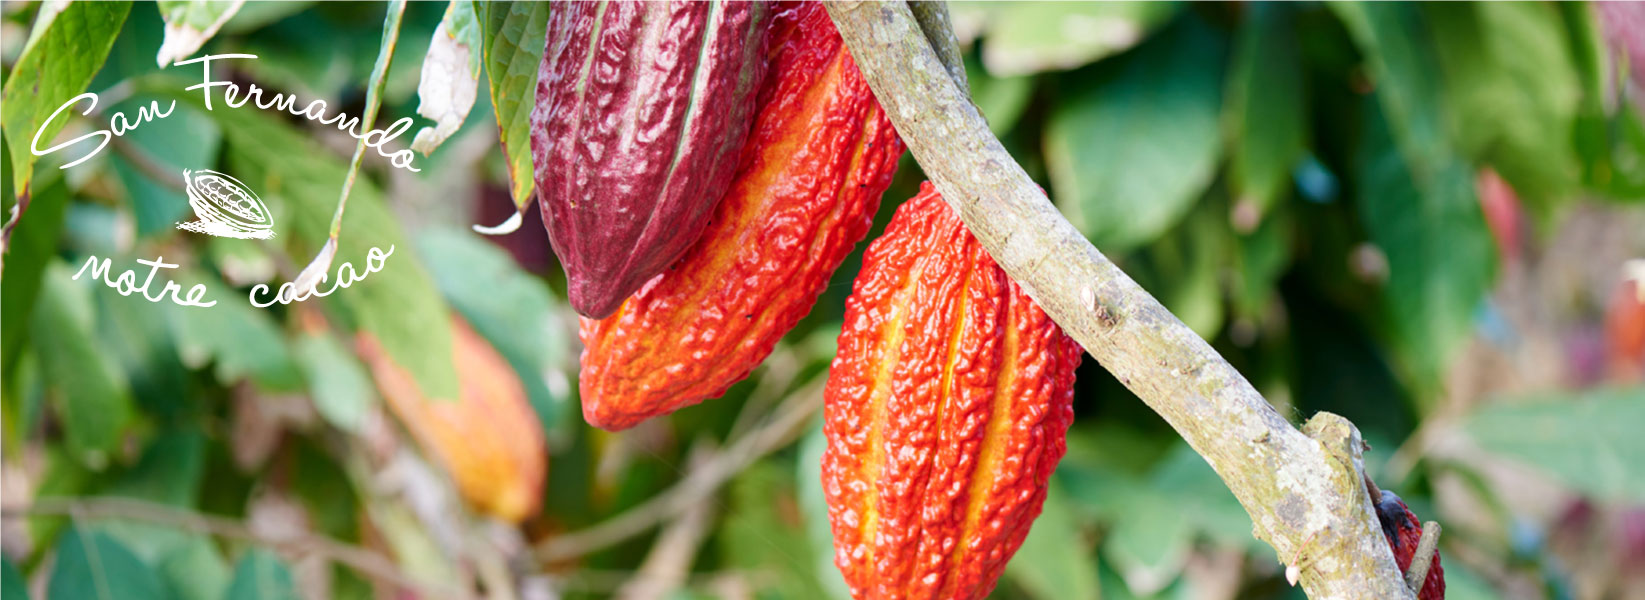 plantation san fernando cacao